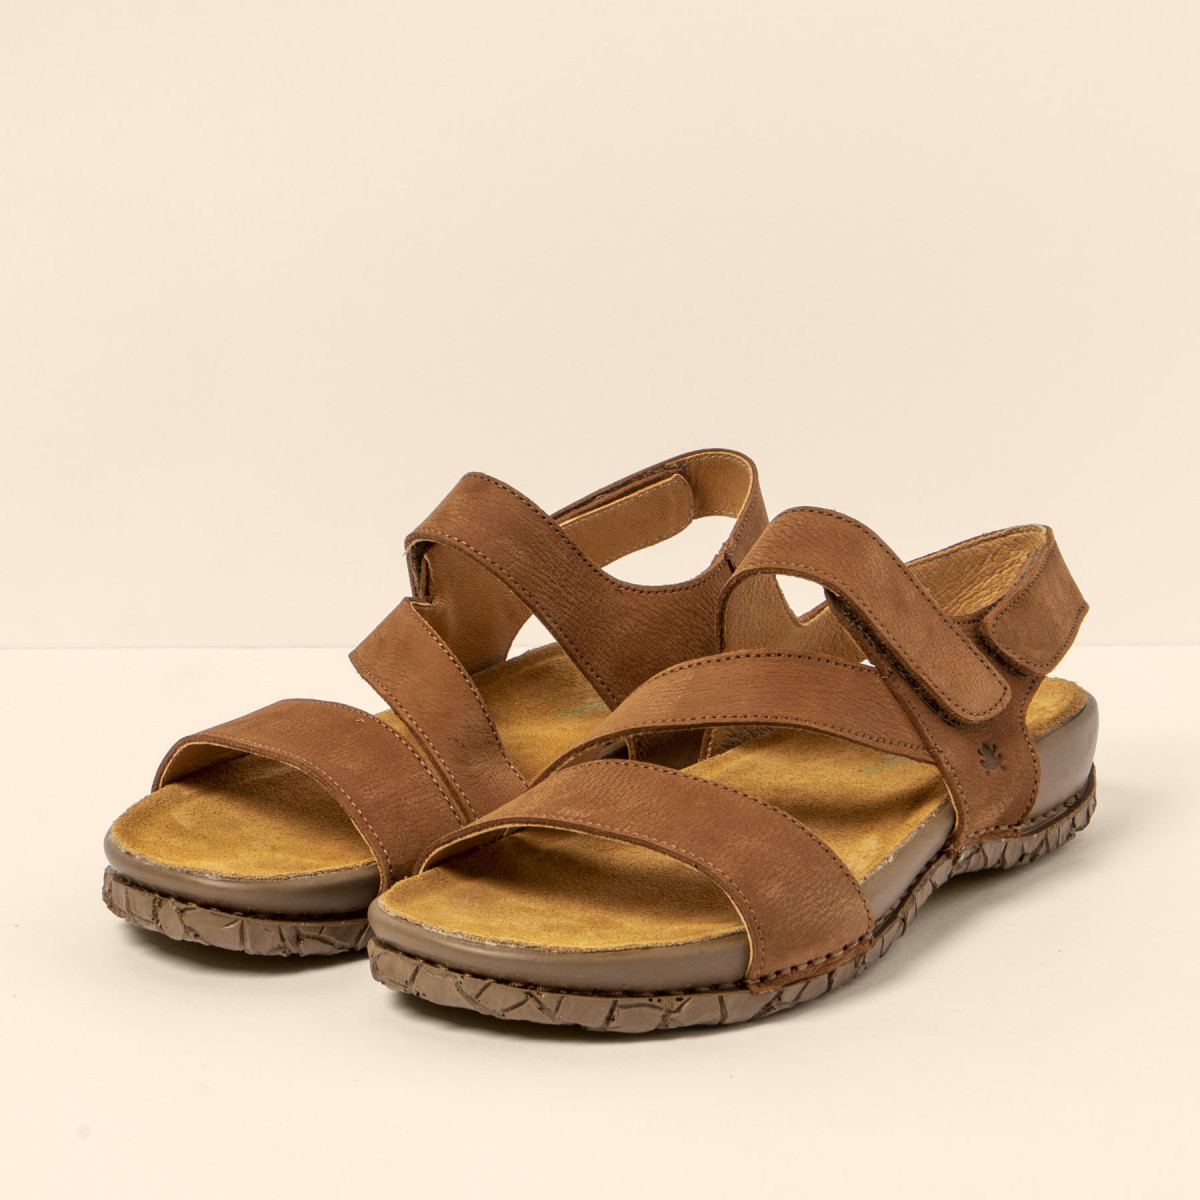 Sandales confortables plates en cuir suédé à scratch - Marron - El naturalista